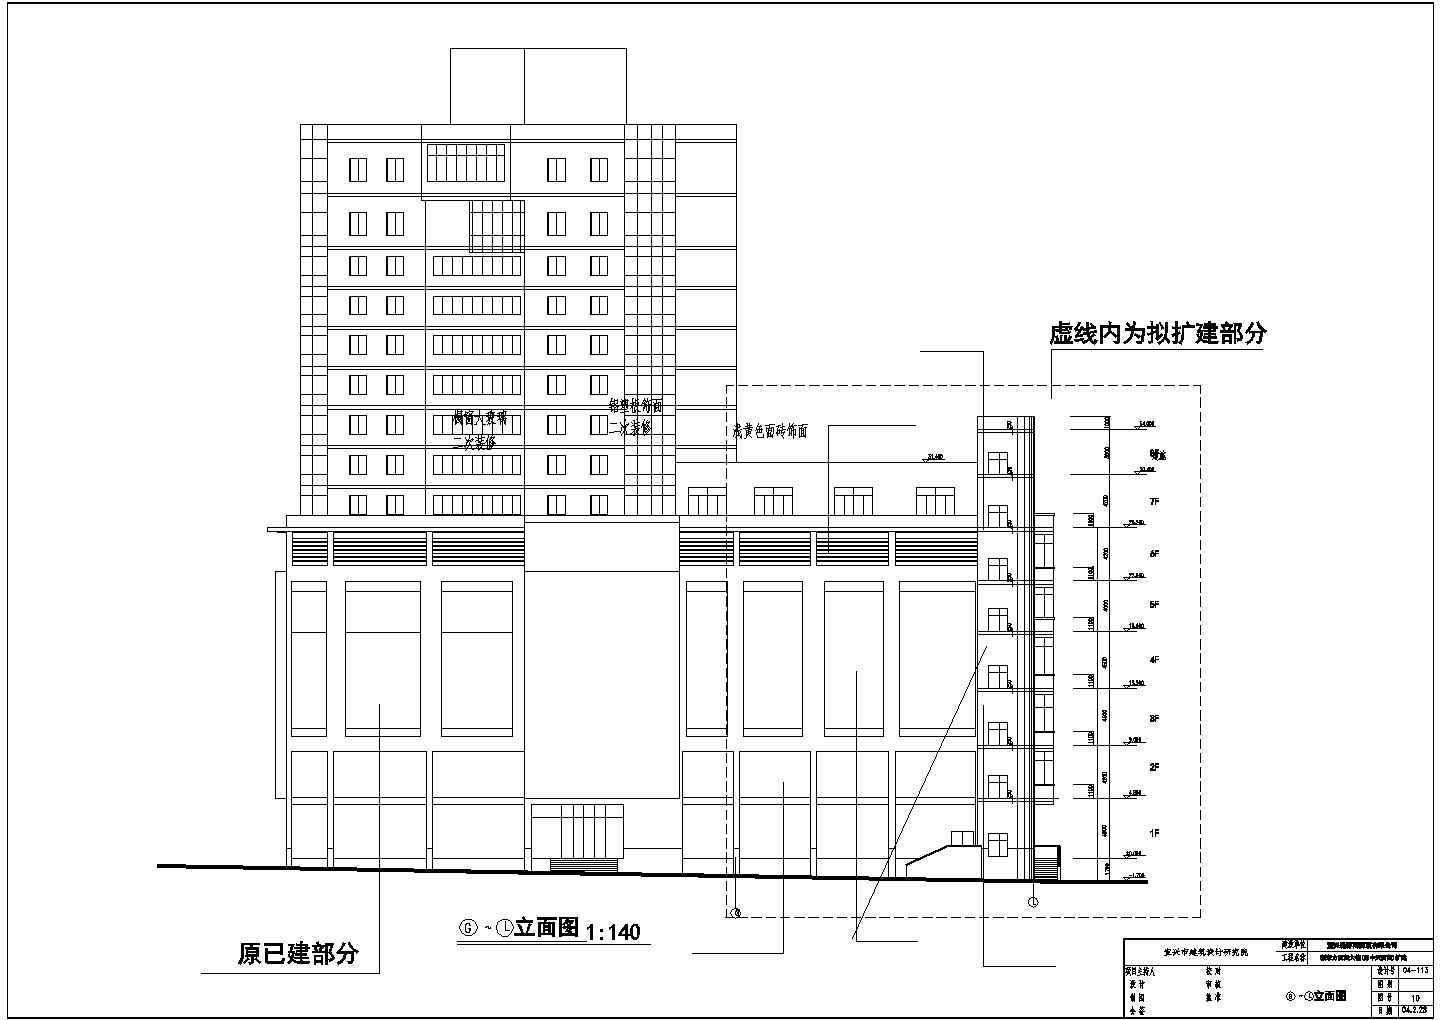 新东方百货大楼的详细建筑设计施工图